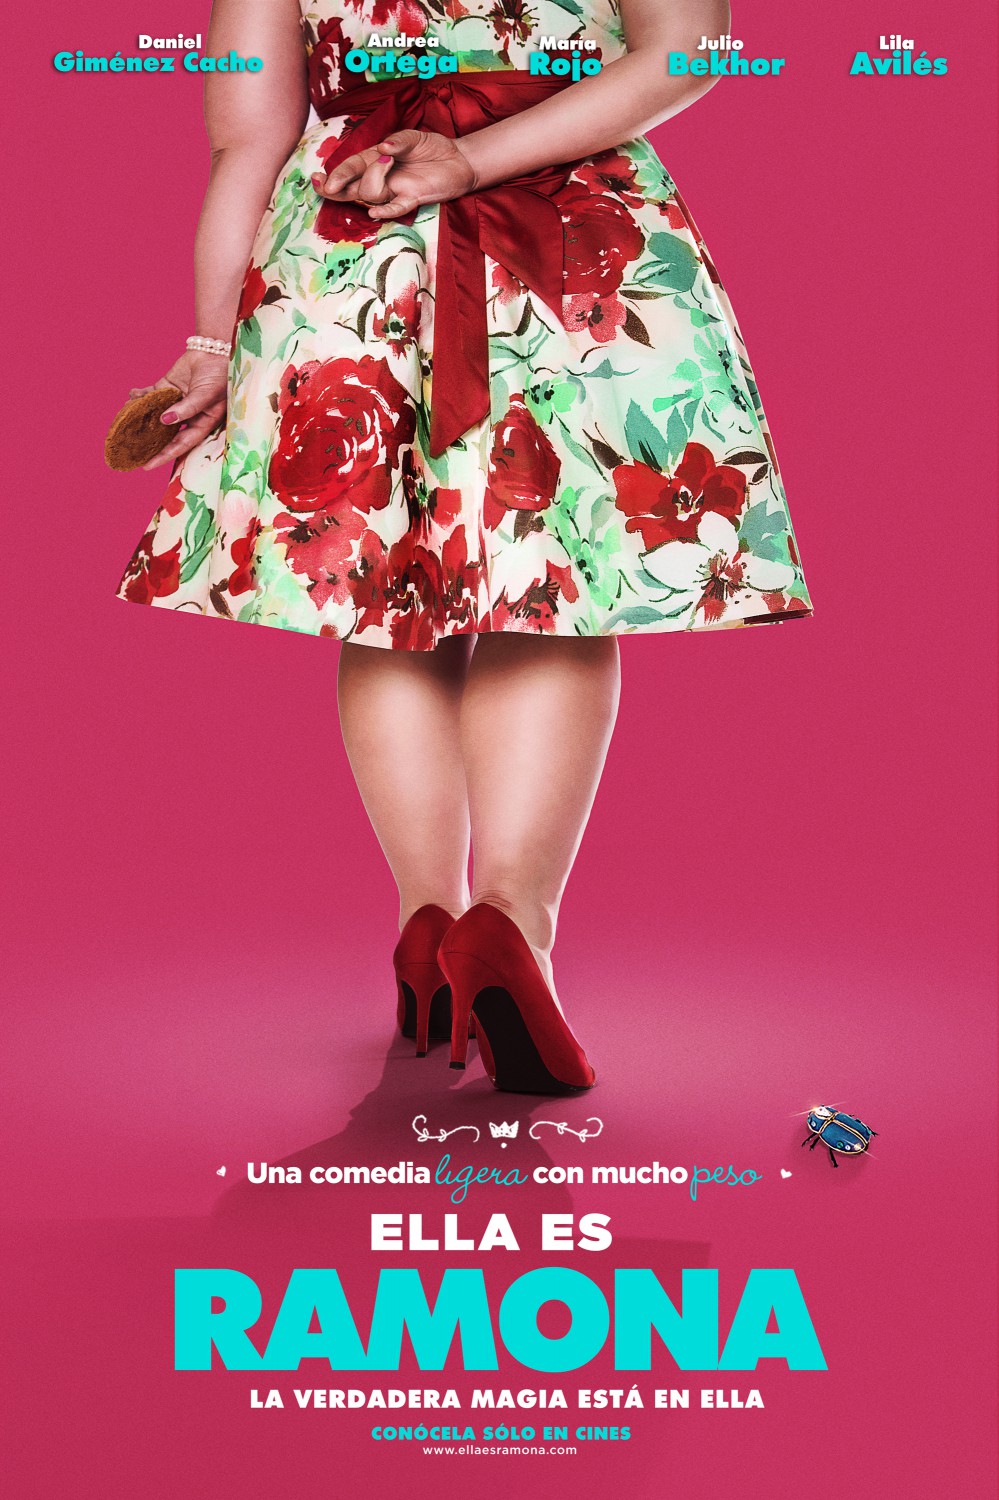 Extra Large Movie Poster Image for Ramona y los escarabajos (#2 of 2)